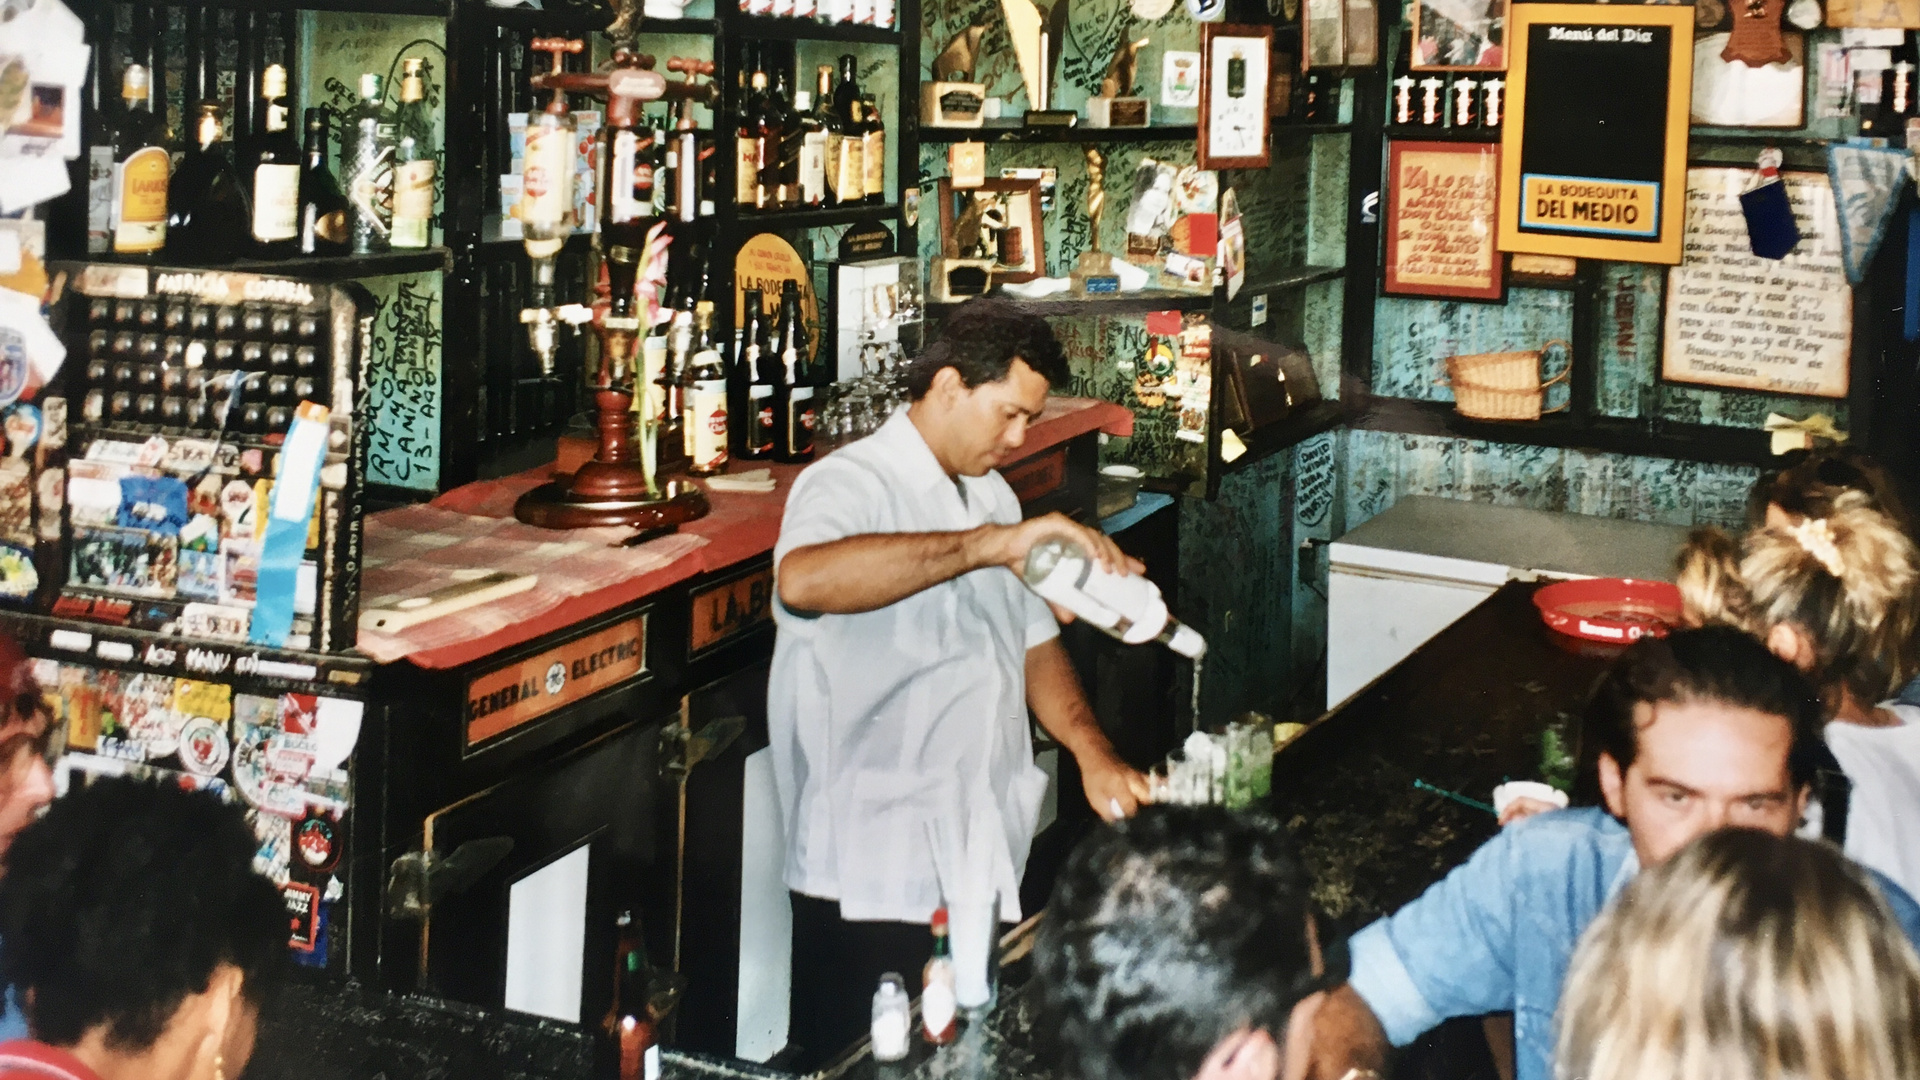 Cuba (2000), La Bodeguita